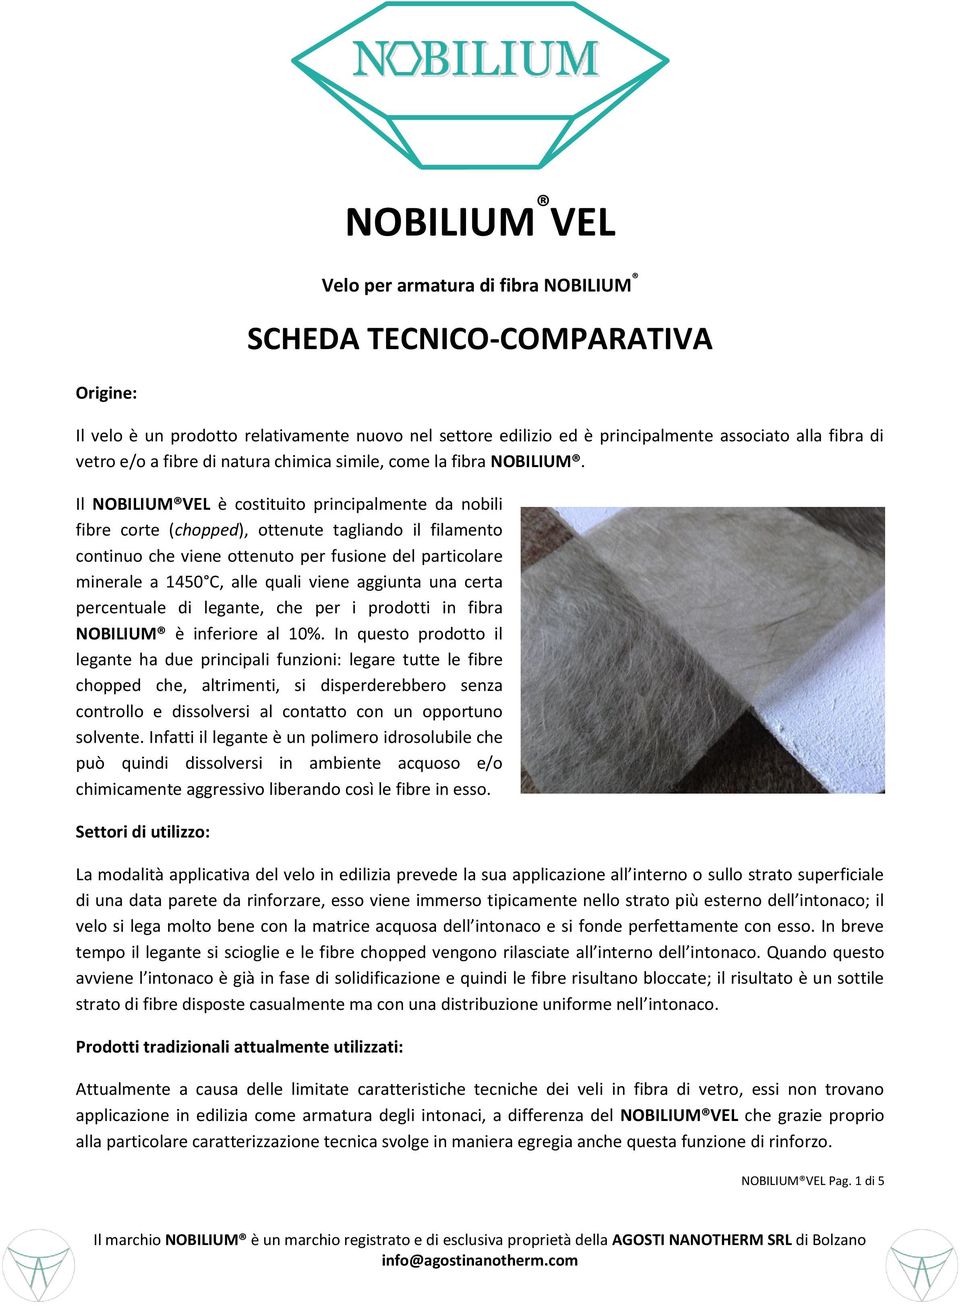 Il NOBILIUM VEL è costituito principalmente da nobili fibre corte (chopped), ottenute tagliando il filamento continuo che viene ottenuto per fusione del particolare minerale a 1450 C, alle quali